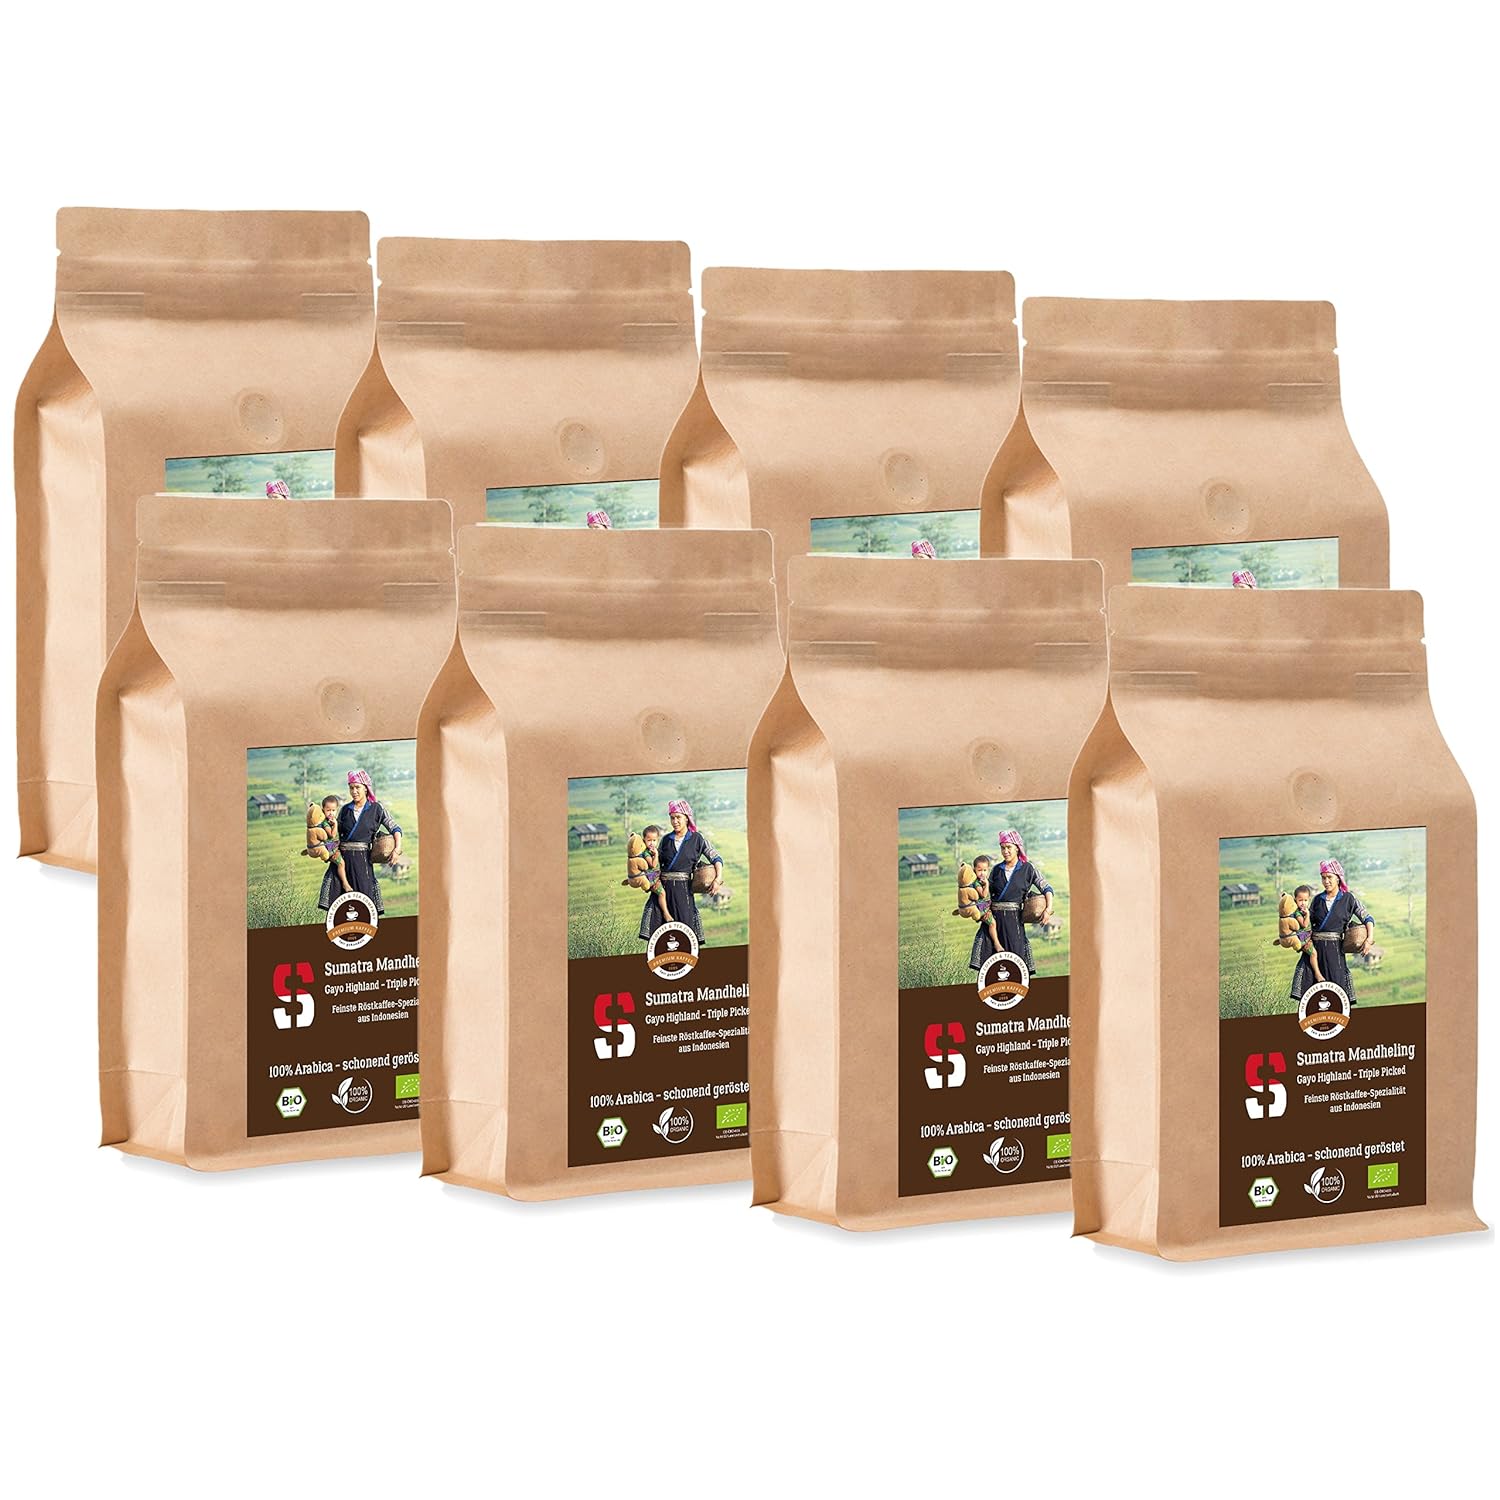 Coffee Globetrotter - Sumatra Mandheling Gayo Highland - Organic - 8 x 1000 g Fine Ground - for Fully Automatic Coffee Grinder - Roasted Coffee from Organic Cultivation | Gastropack Economy Pack